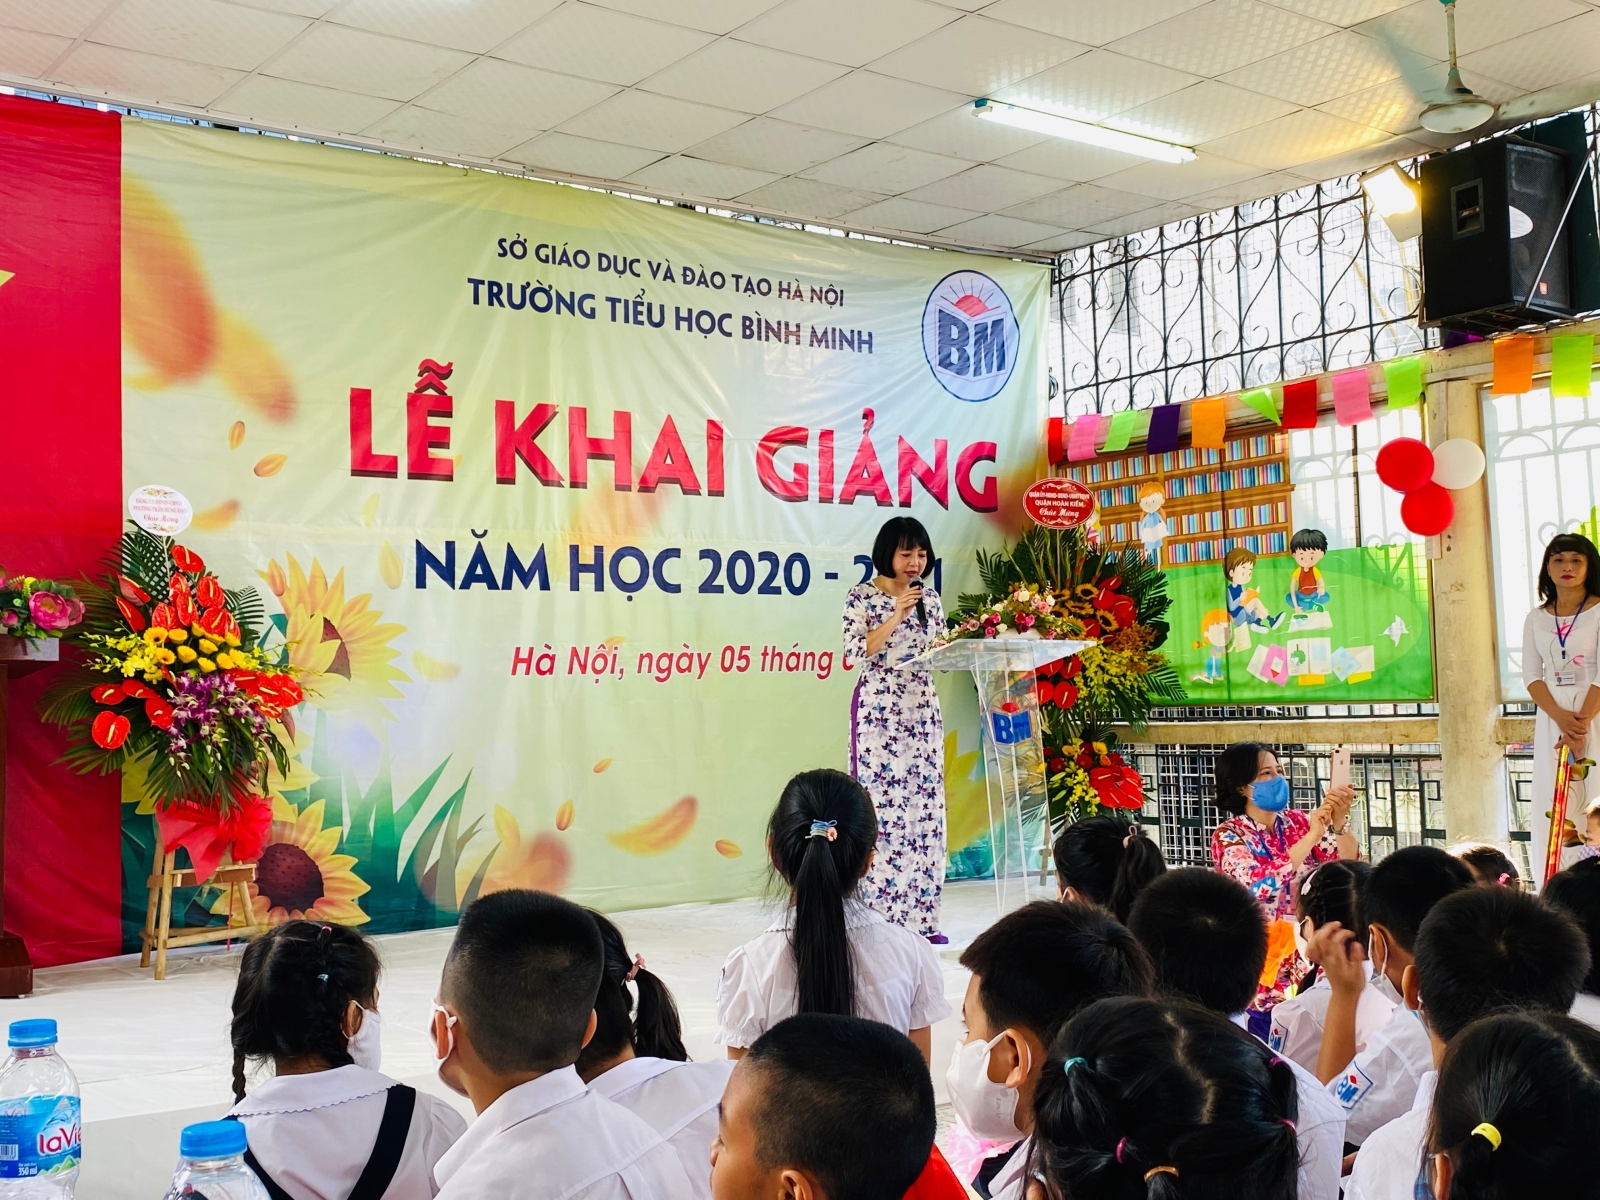 Hân hoan niềm vui đến trường của học trò trường trong phố cổ Hà Nội